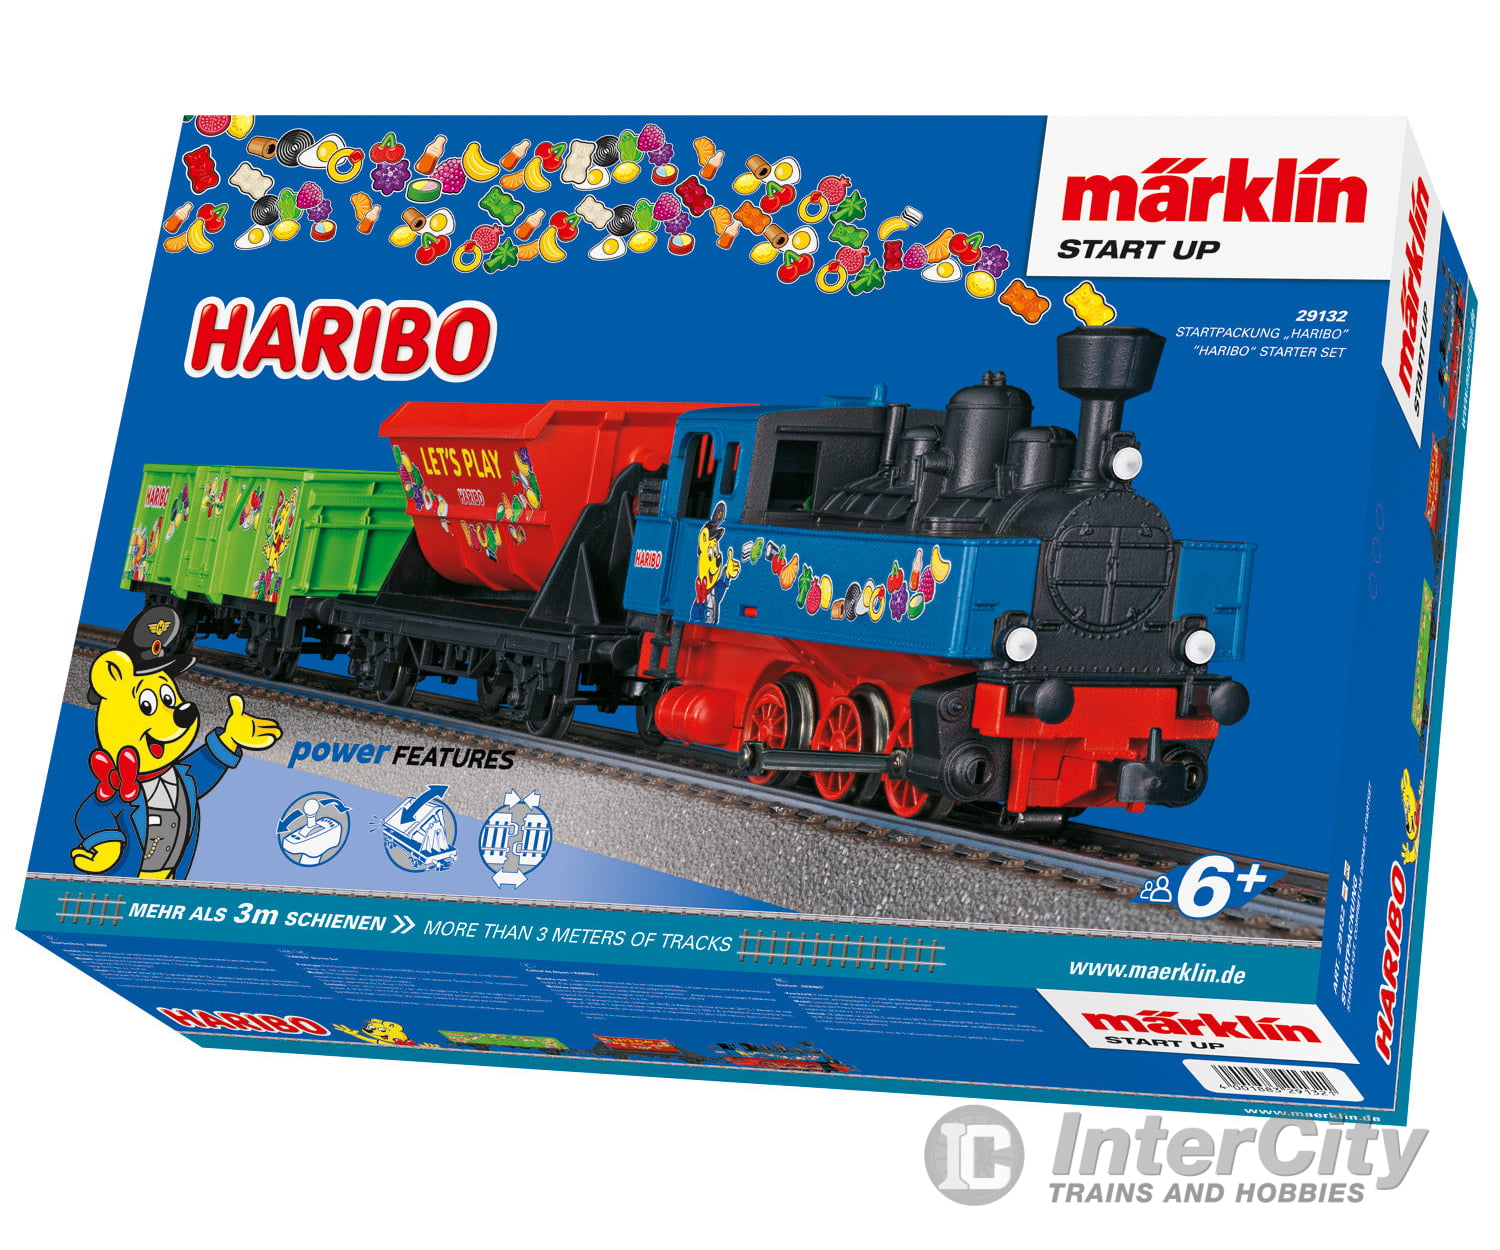 Marklin 29132 Marklin Start up - "HARIBO" Starter Set - Default Title (IC-MARK-29132)